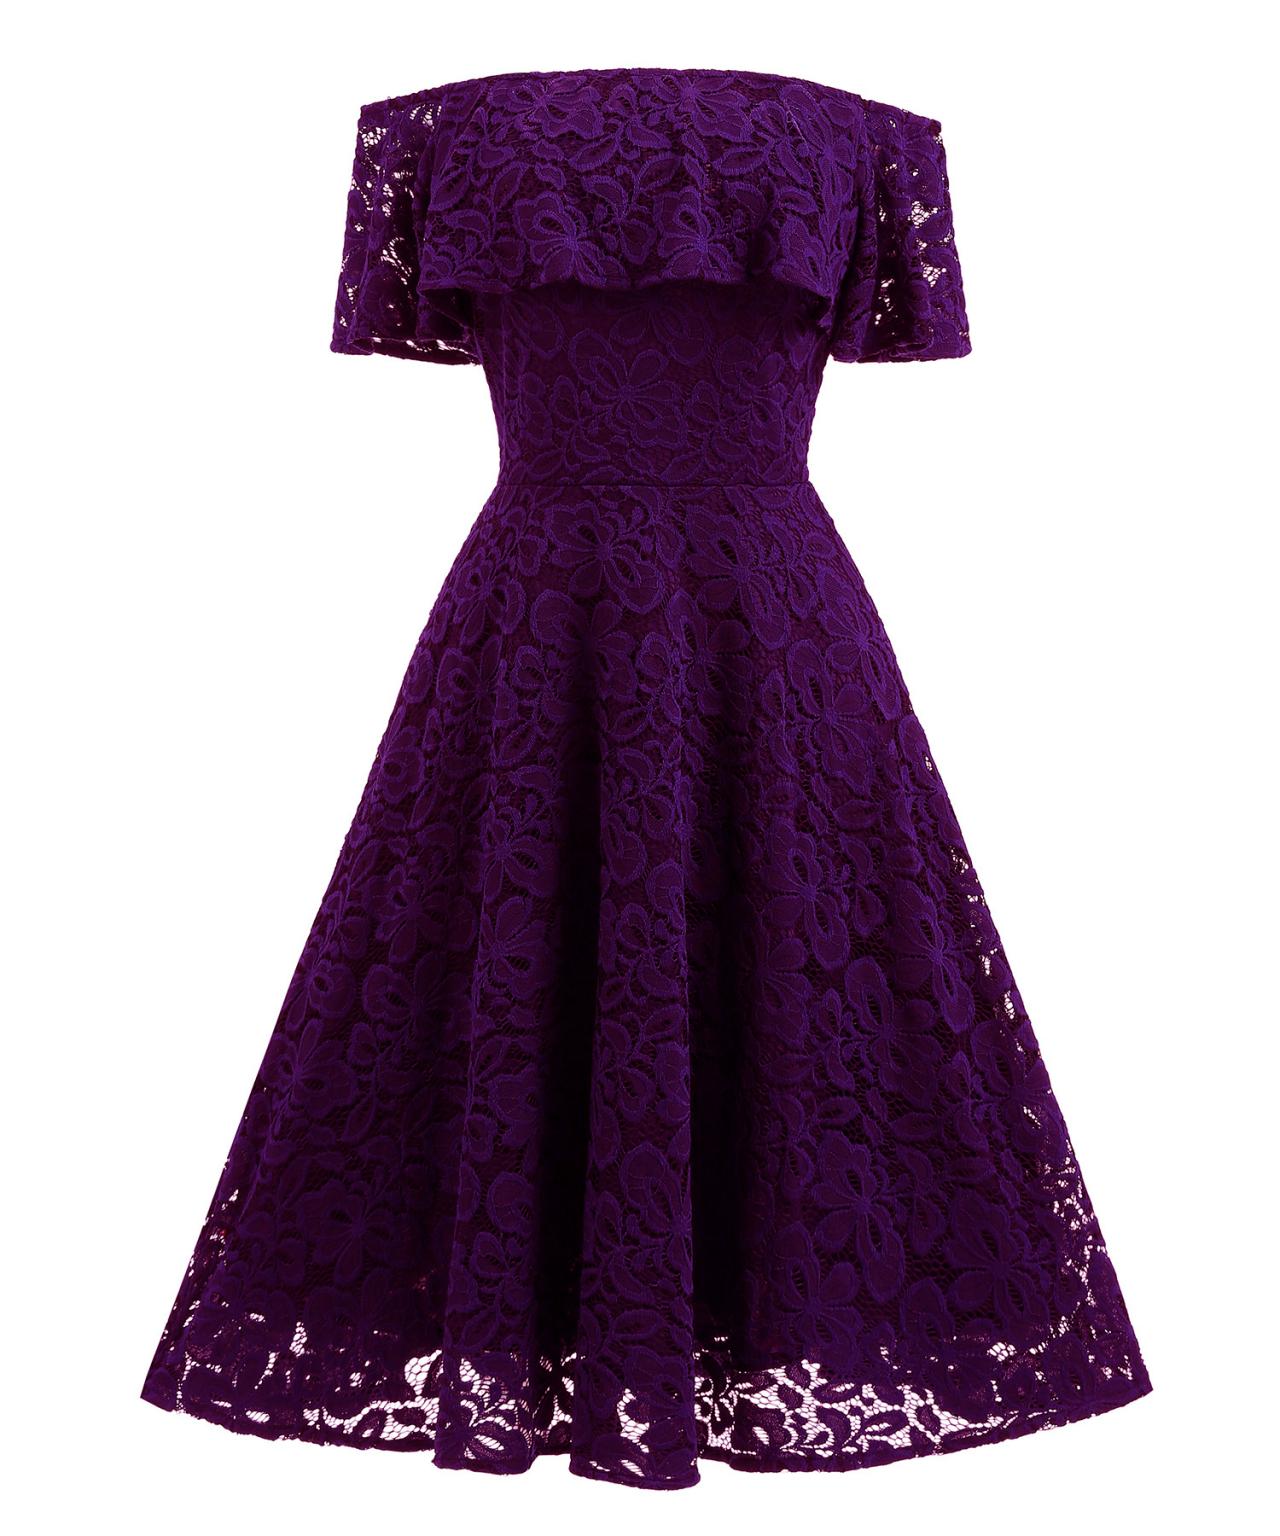 Purple Lace Short Bridesmaid Dress 2019, Short Bridesmaids Gowns .short Evening Party Gowns , Bridesmaid Gowns .short Bridesmaid Gowns